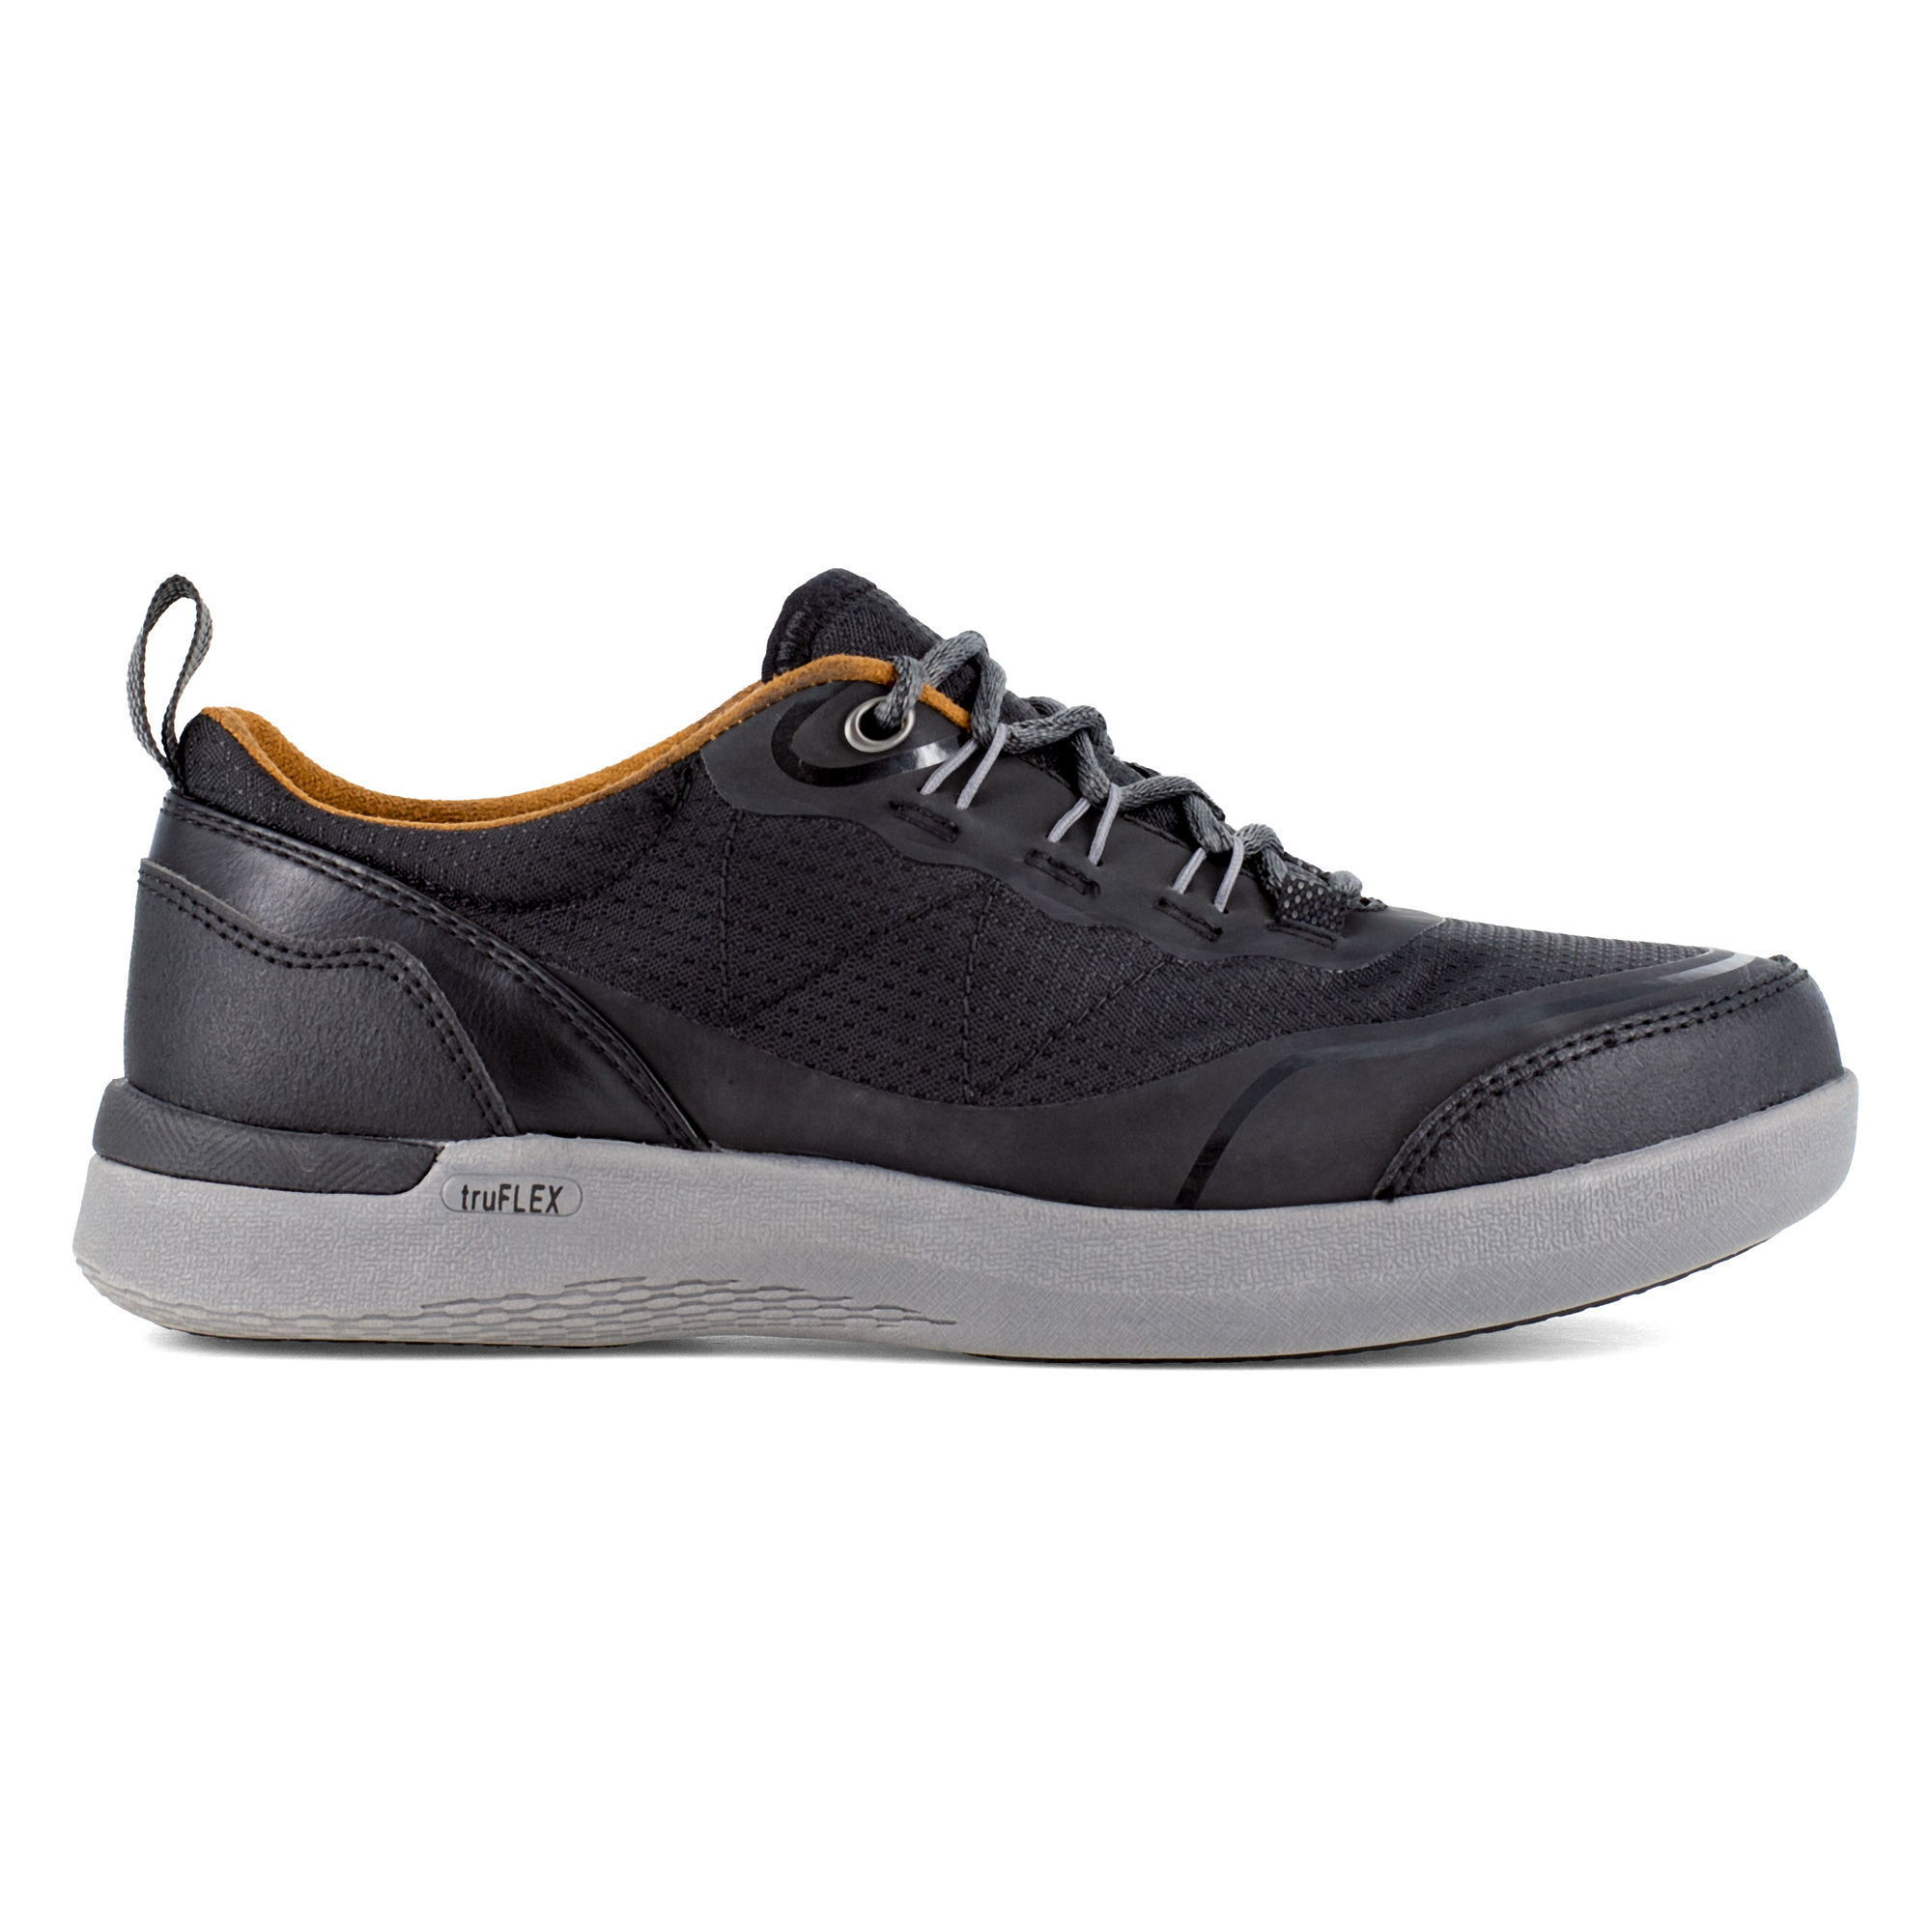 Rockport Works, Work Sneaker, Size 8 1/2, Width Medium, Color Black, Model RK687